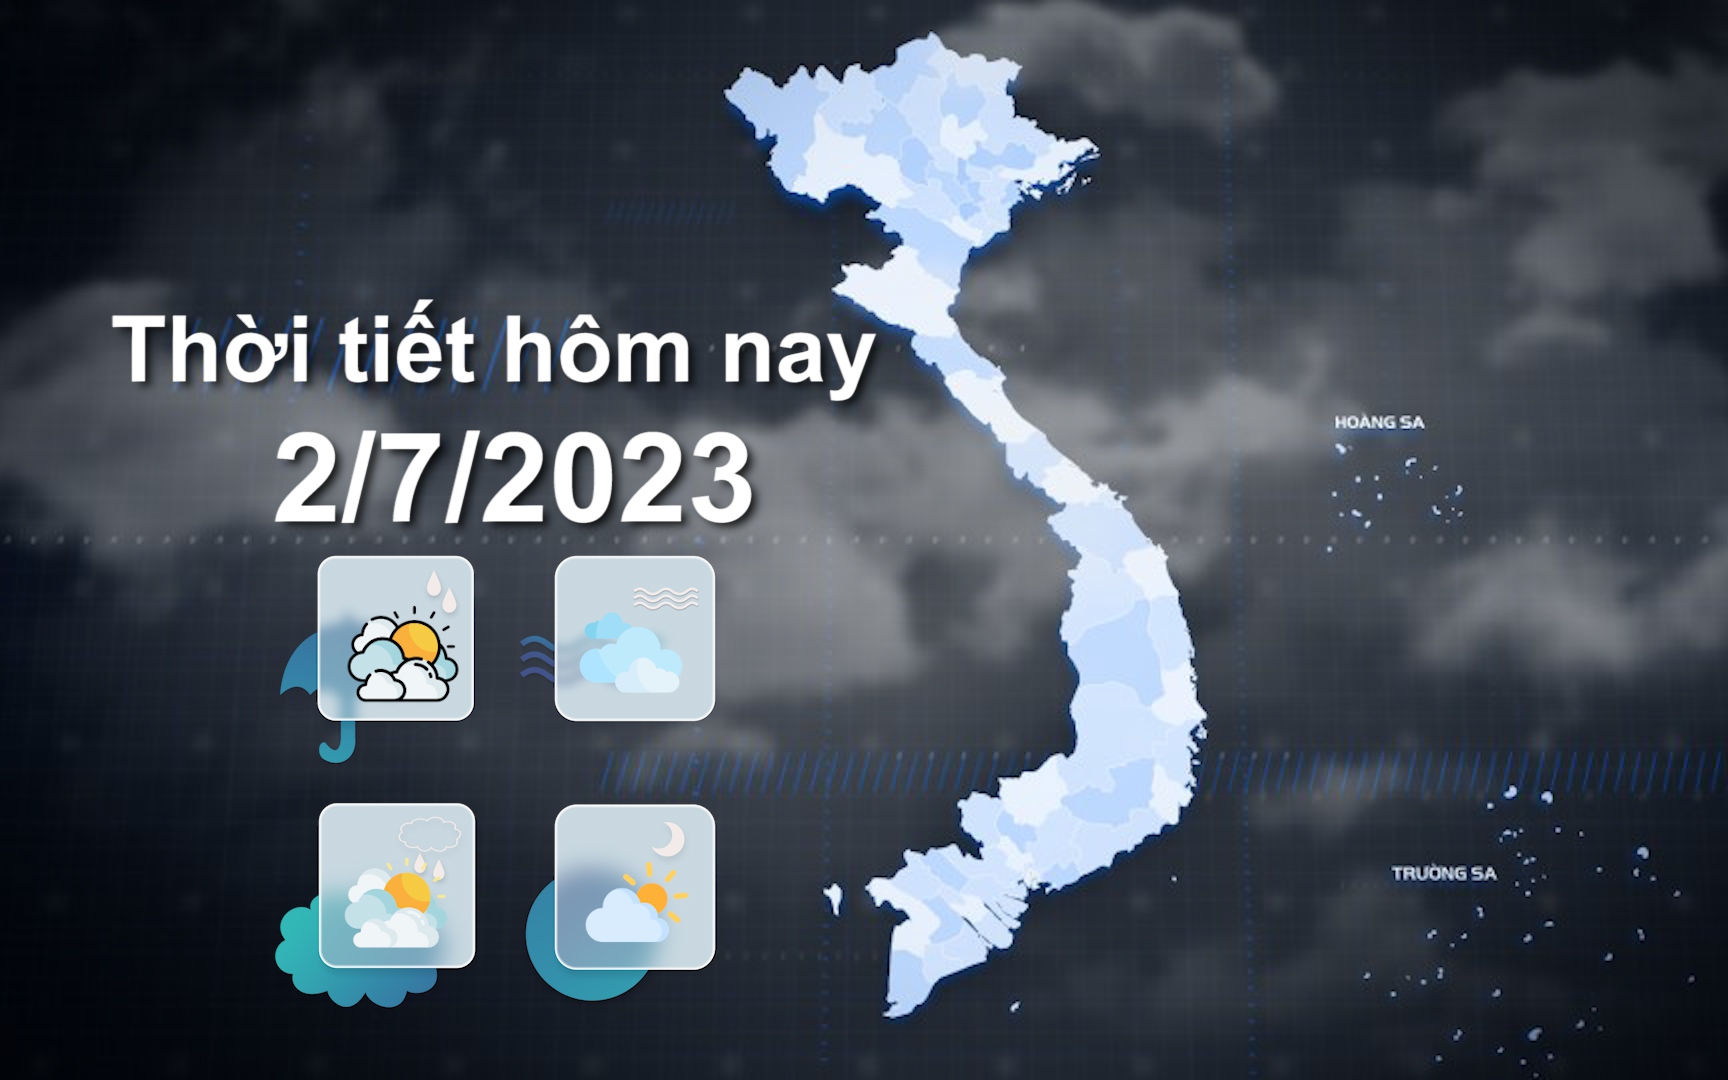 Thời tiết hôm nay 2/7/2023: Bắc Bộ ngày nắng nóng gay gắt, chiều tối mưa dông